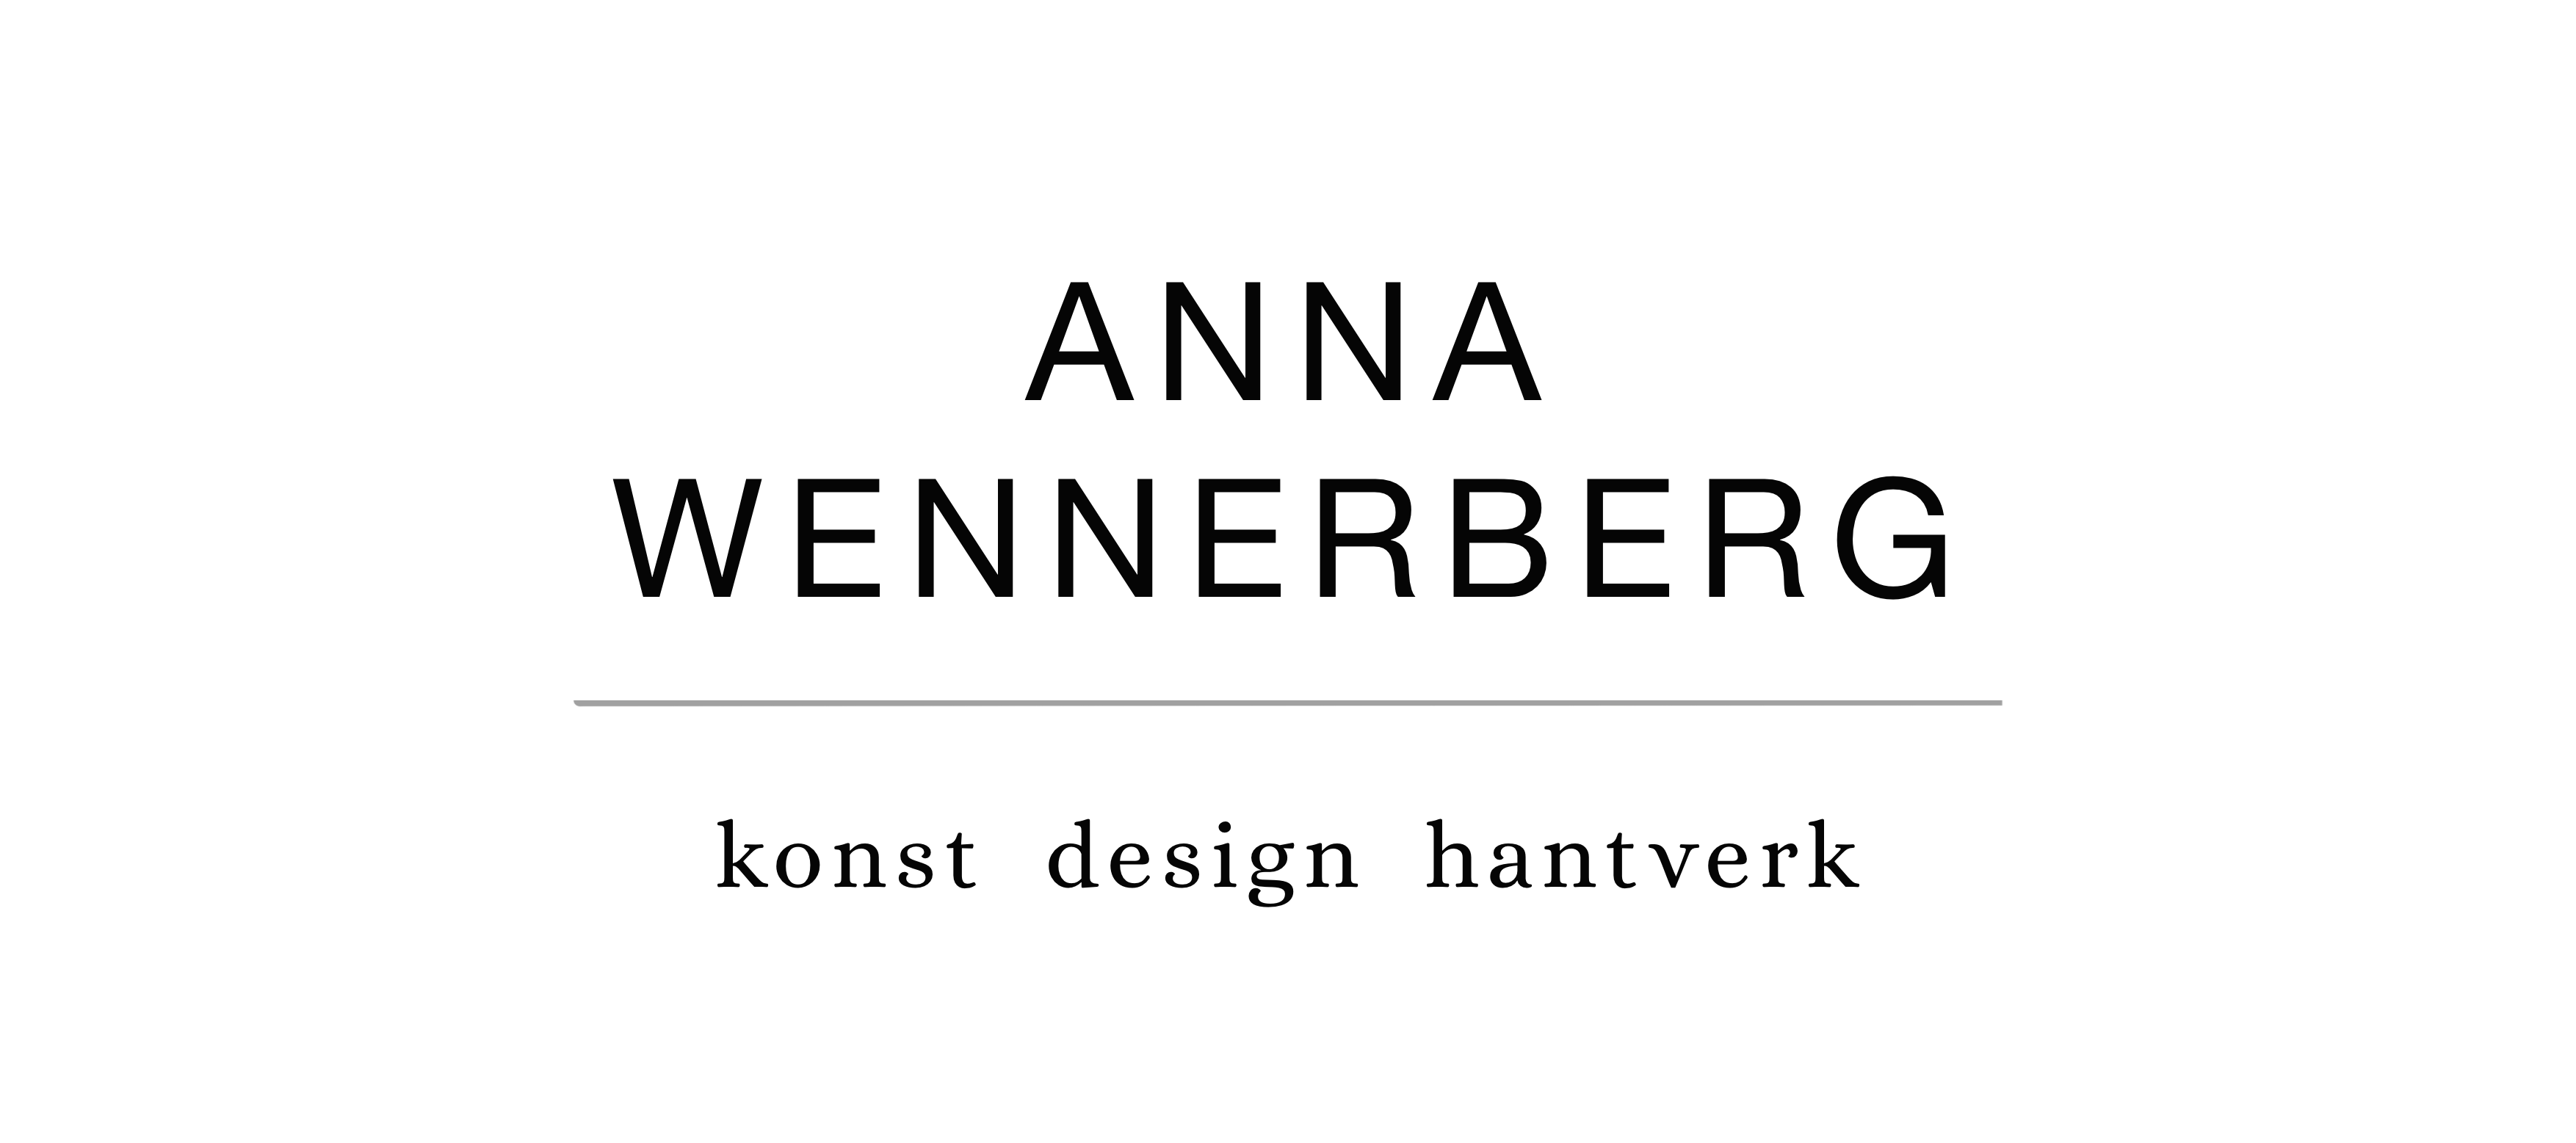 annawennerberg